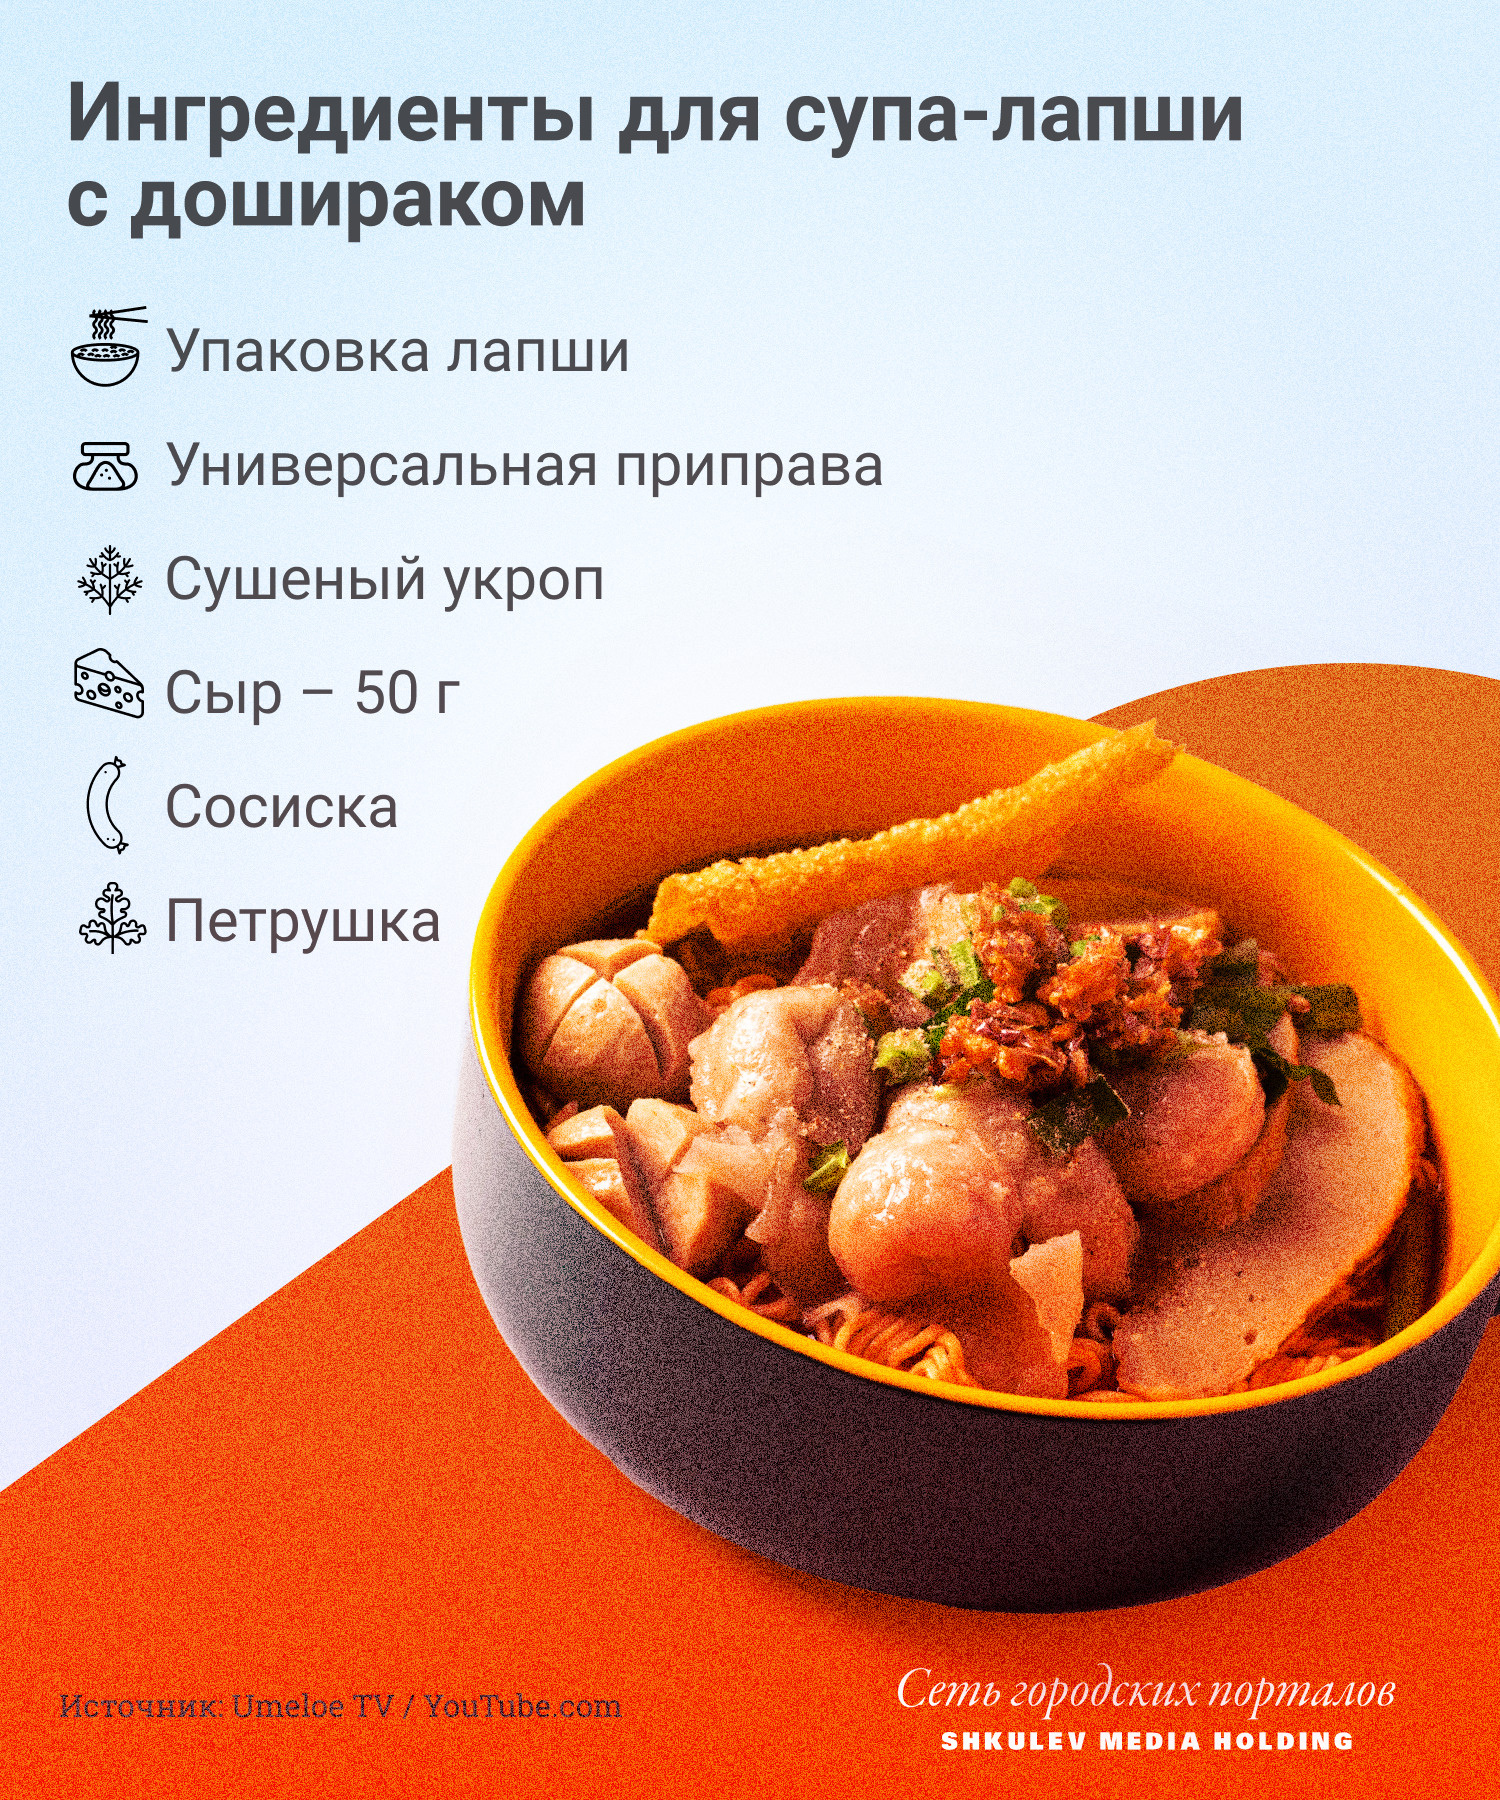 Из доширака можно сделать разные версии супов, но это самый элементарный (и босяцкий)